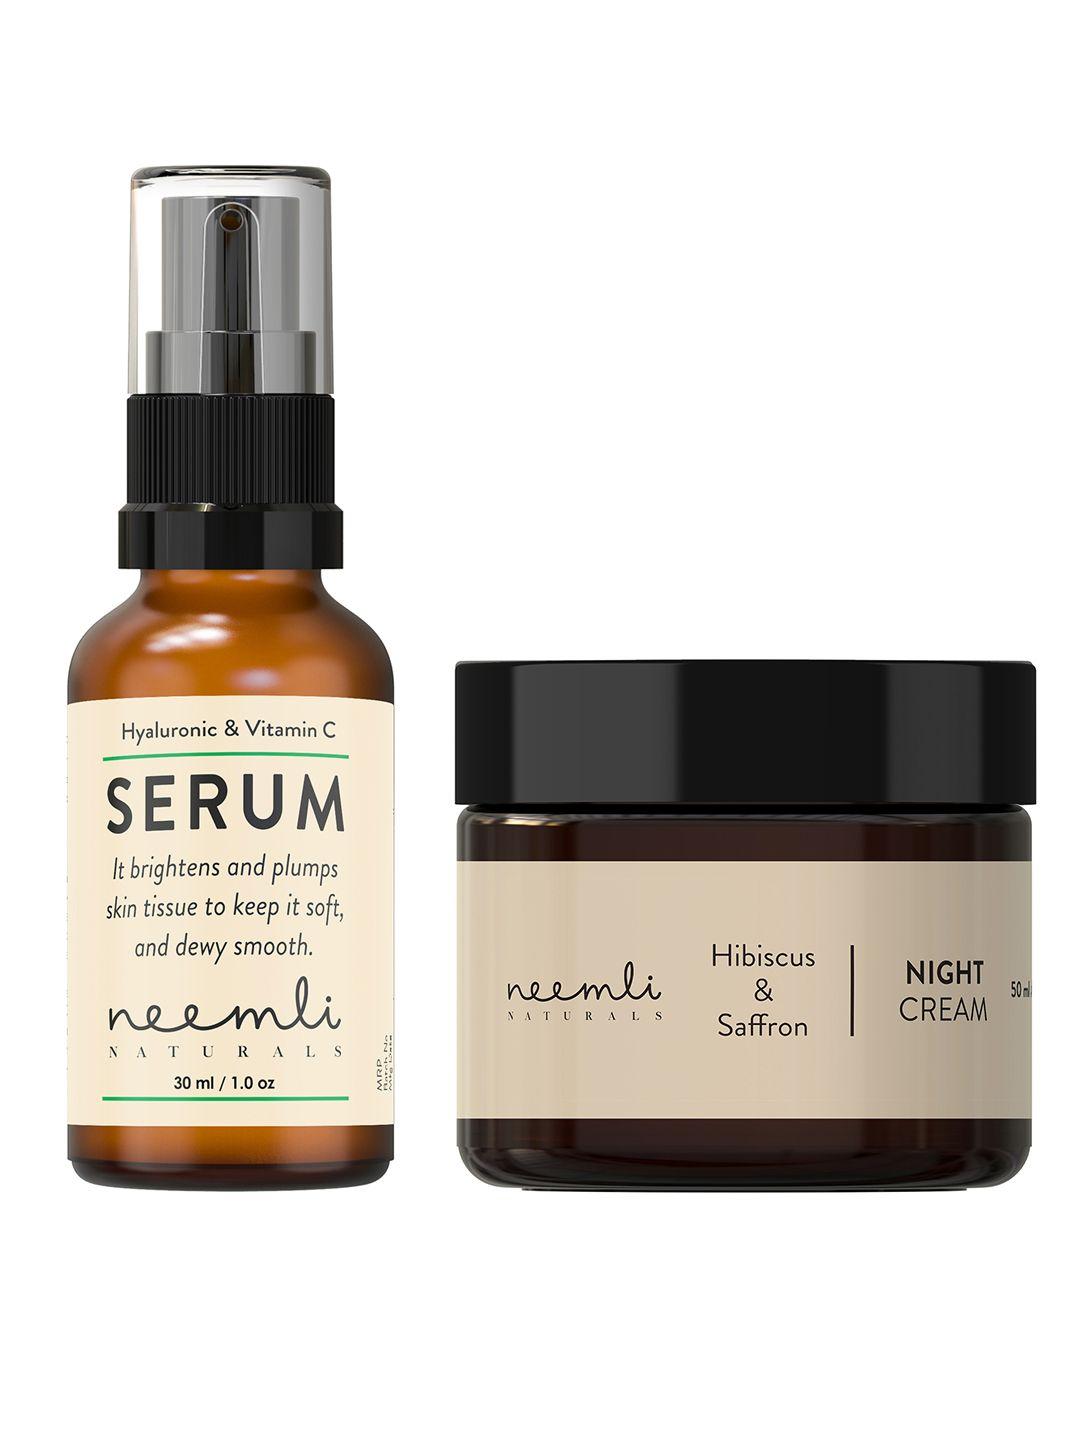 neemli naturals hyaluronic & vitamin c serum 30ml with hibiscus & saffron night cream 50ml